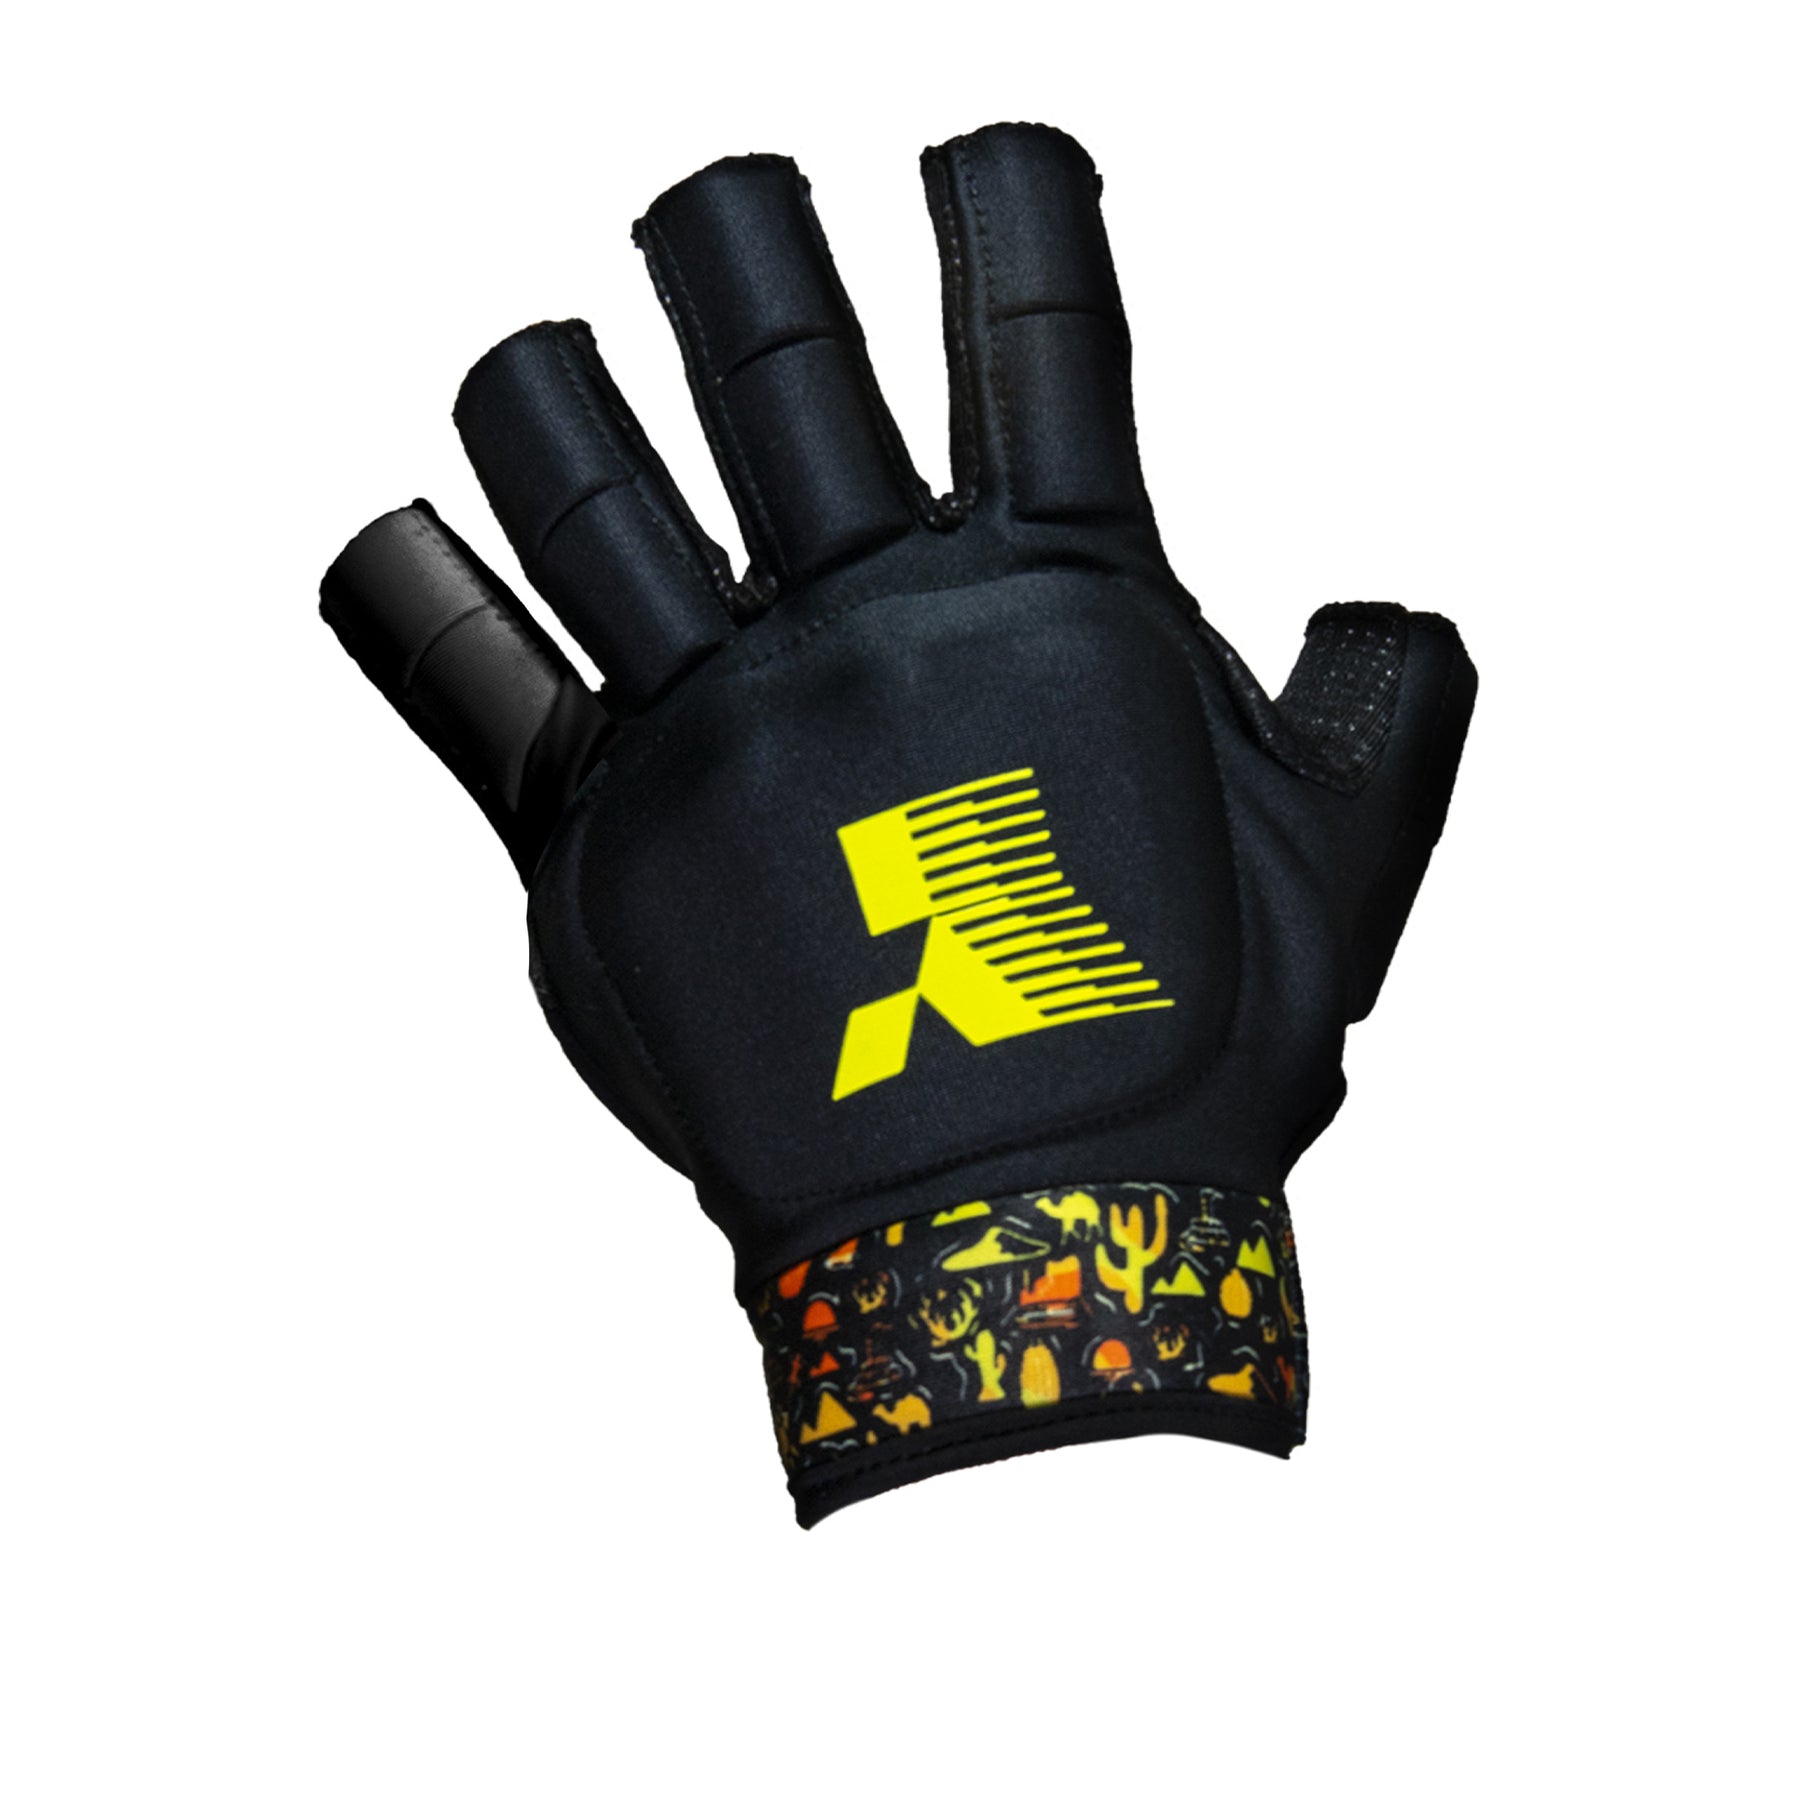 Y1 MK5 Hockey Glove